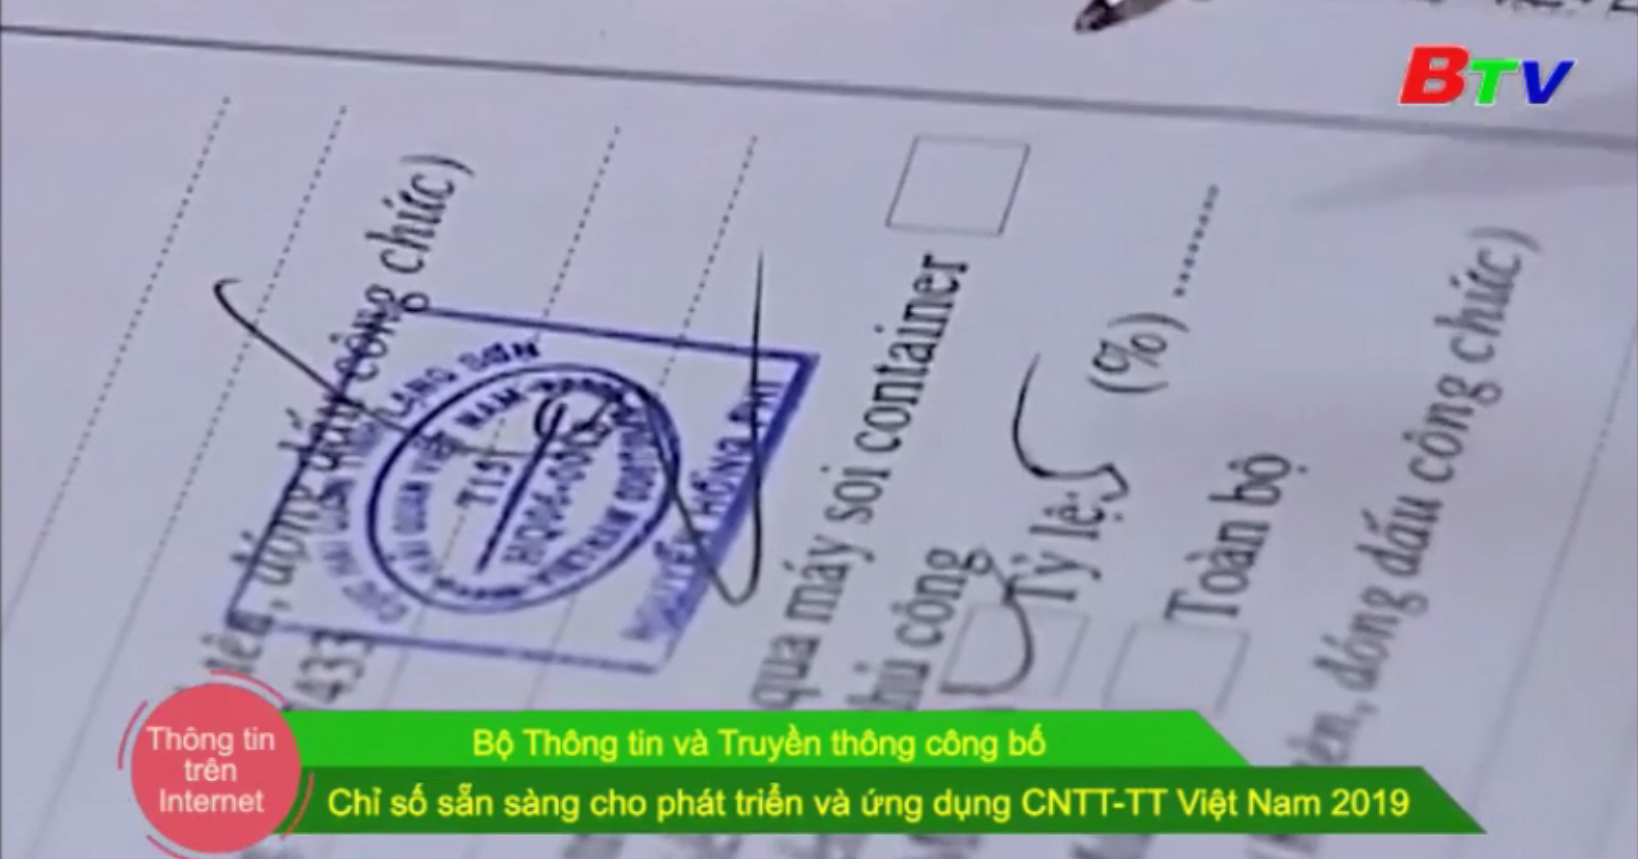 Bộ Thông tin và Truyền thông công bố Chỉ số sẵn sàng cho phát triển và ứng dụng CNTT-TT Việt Nam 2019